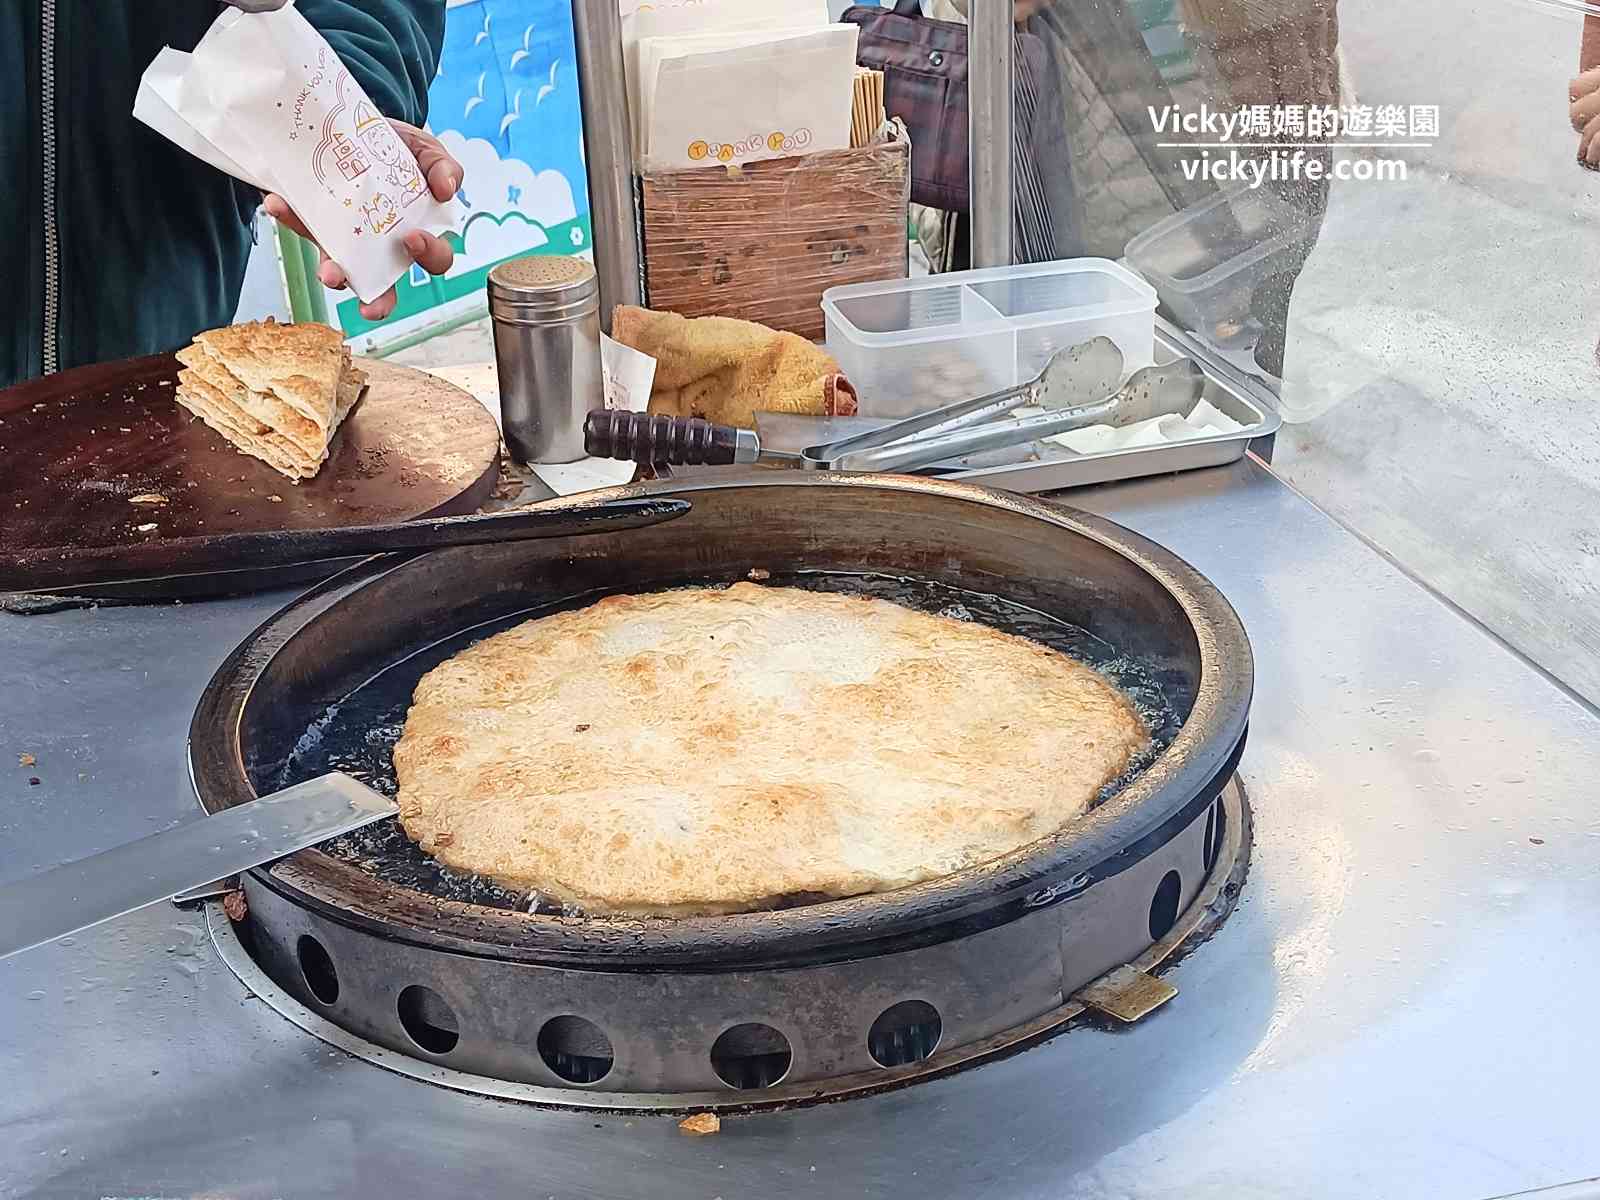 歸仁美食︱新疆蔥油餅：現點現做，1大片切成8小片，片片酥脆可口，想吃新疆蔥油餅，就在歸仁農會對面